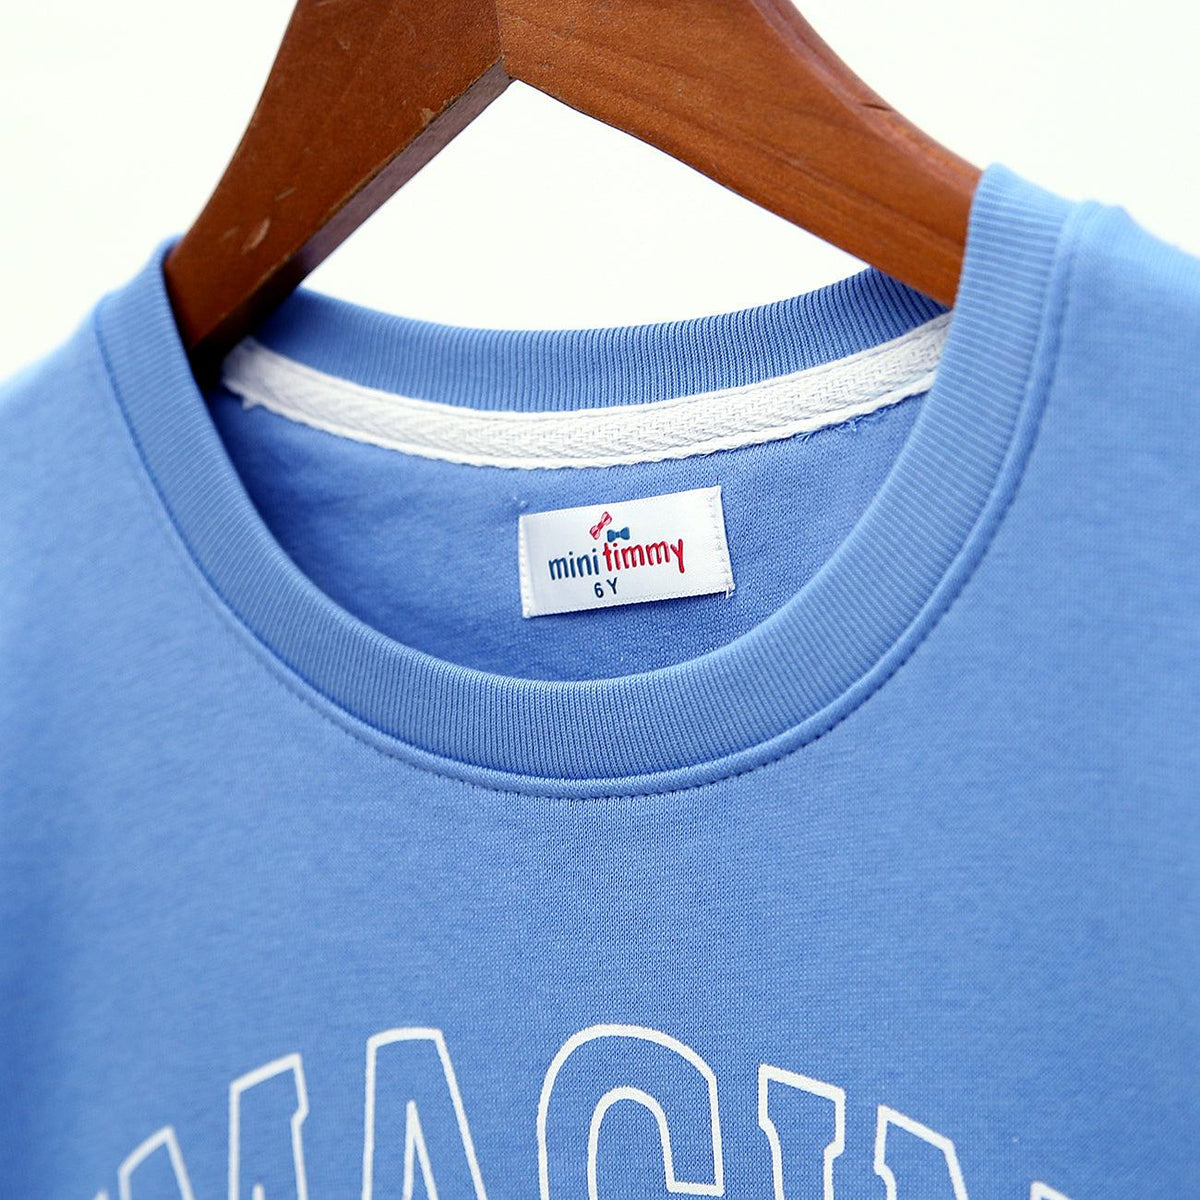 Sky Blue Graphic Printed Fleece Sweatshirt For Girls (MT-120000) - Brands River